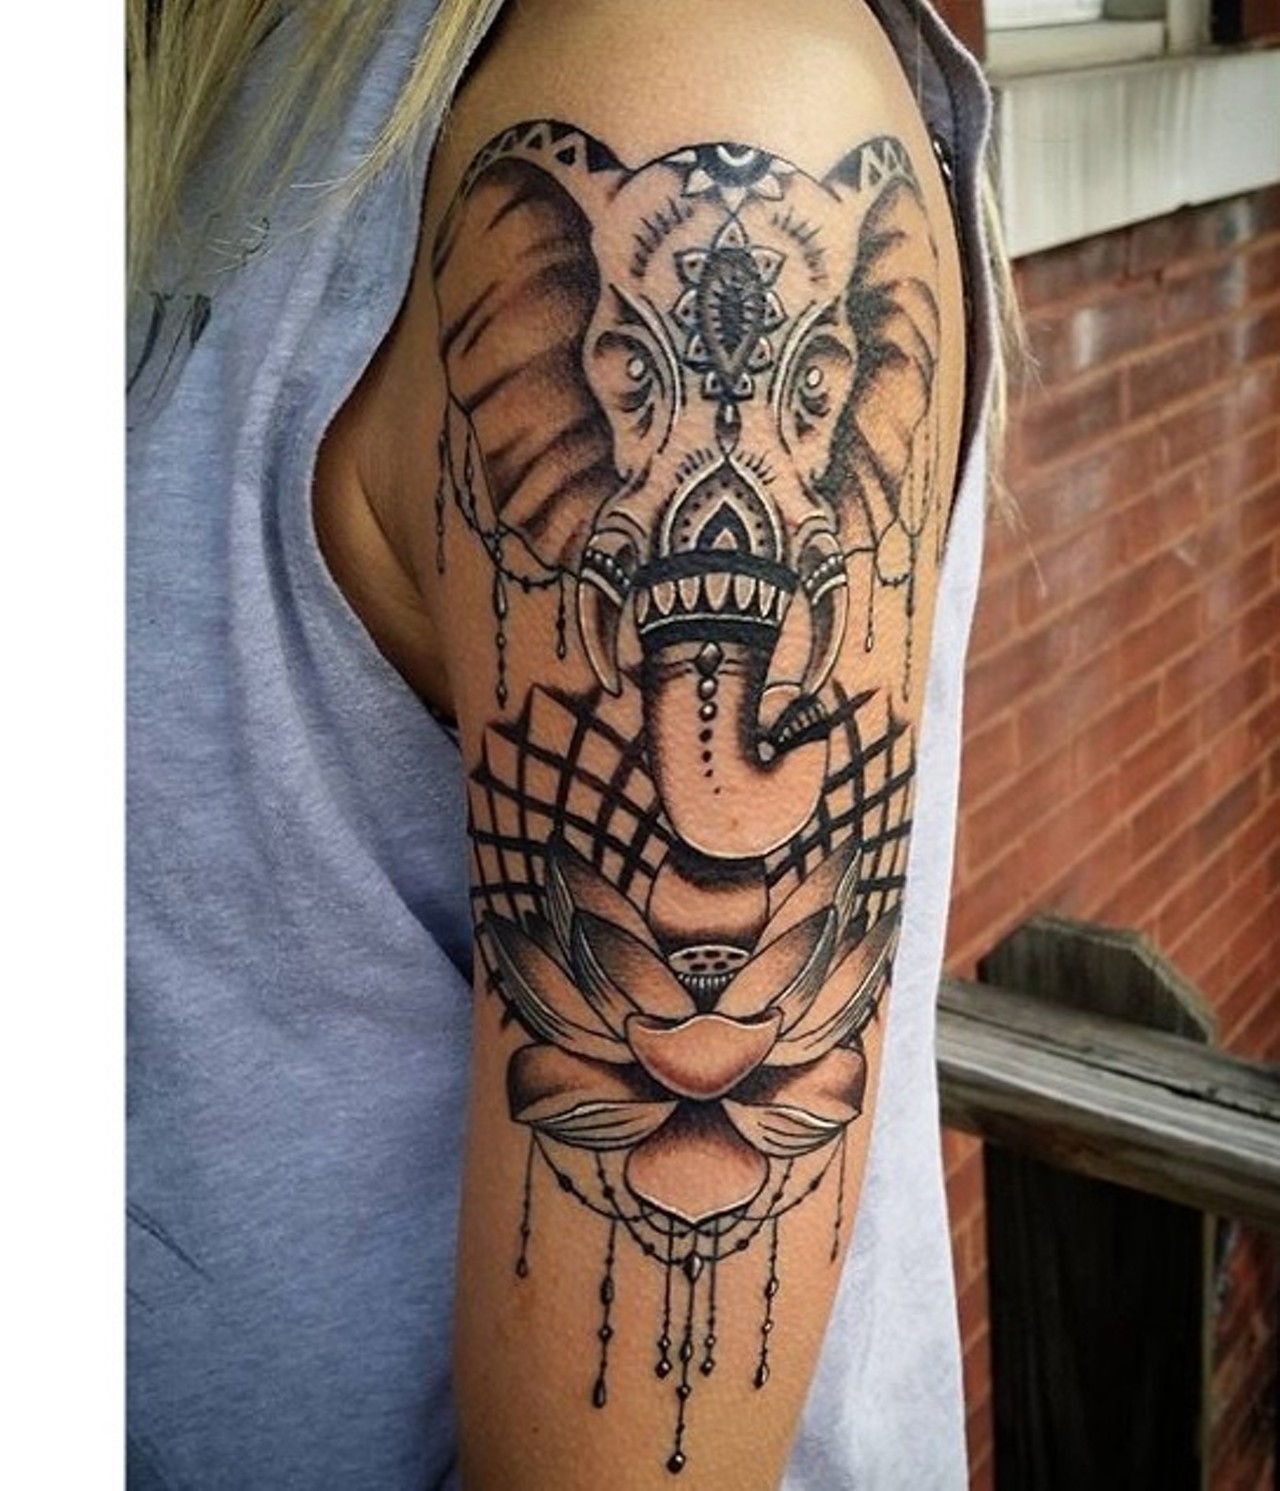 Jeremy Lambert -- jlambert_tattoo
TRX Tattoos
3207 S. Grand Blvd., St. Louis, MO 63118
(314) 664-4011